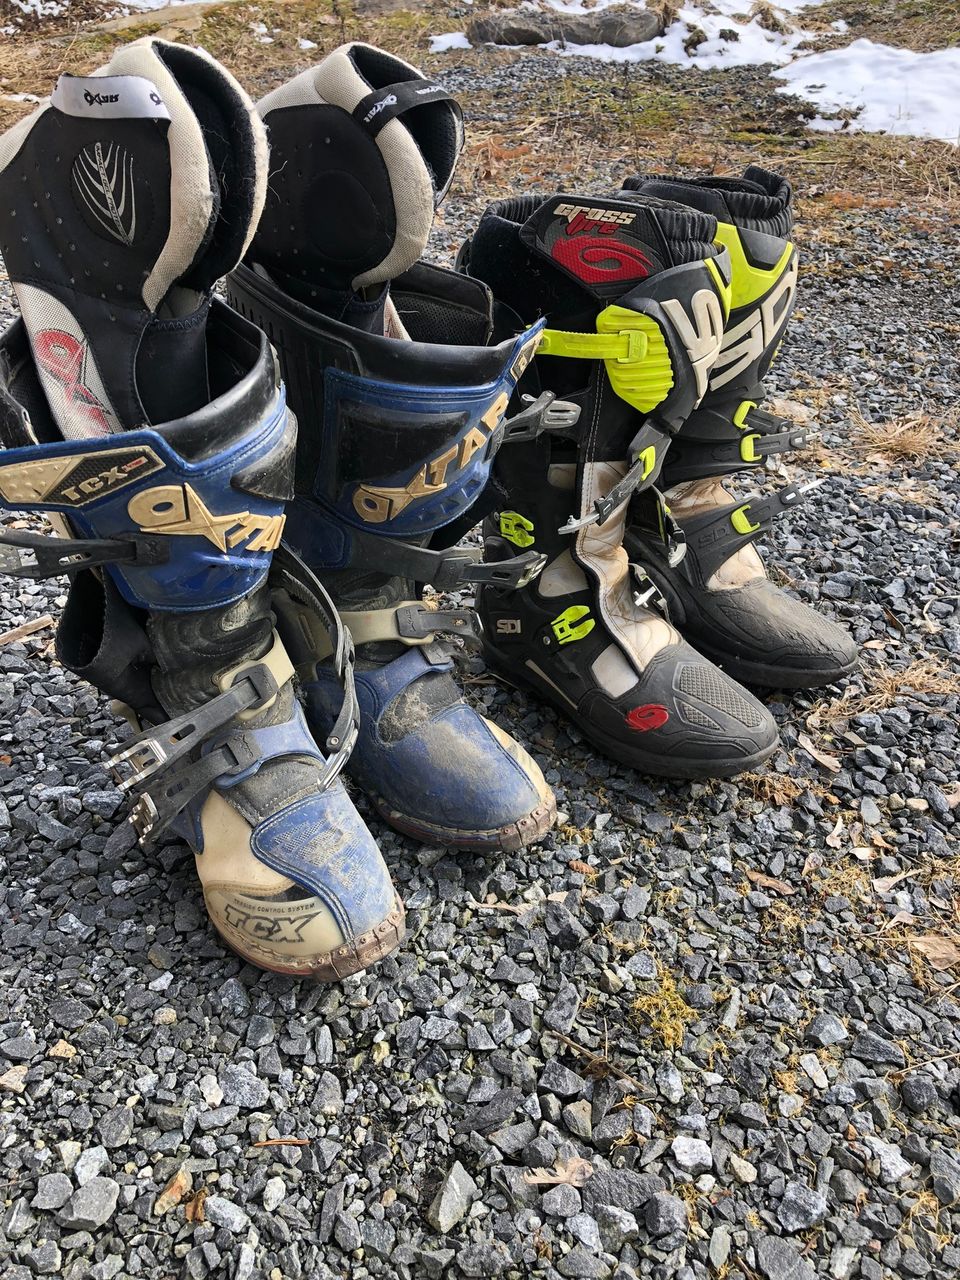 Motocross varusteet